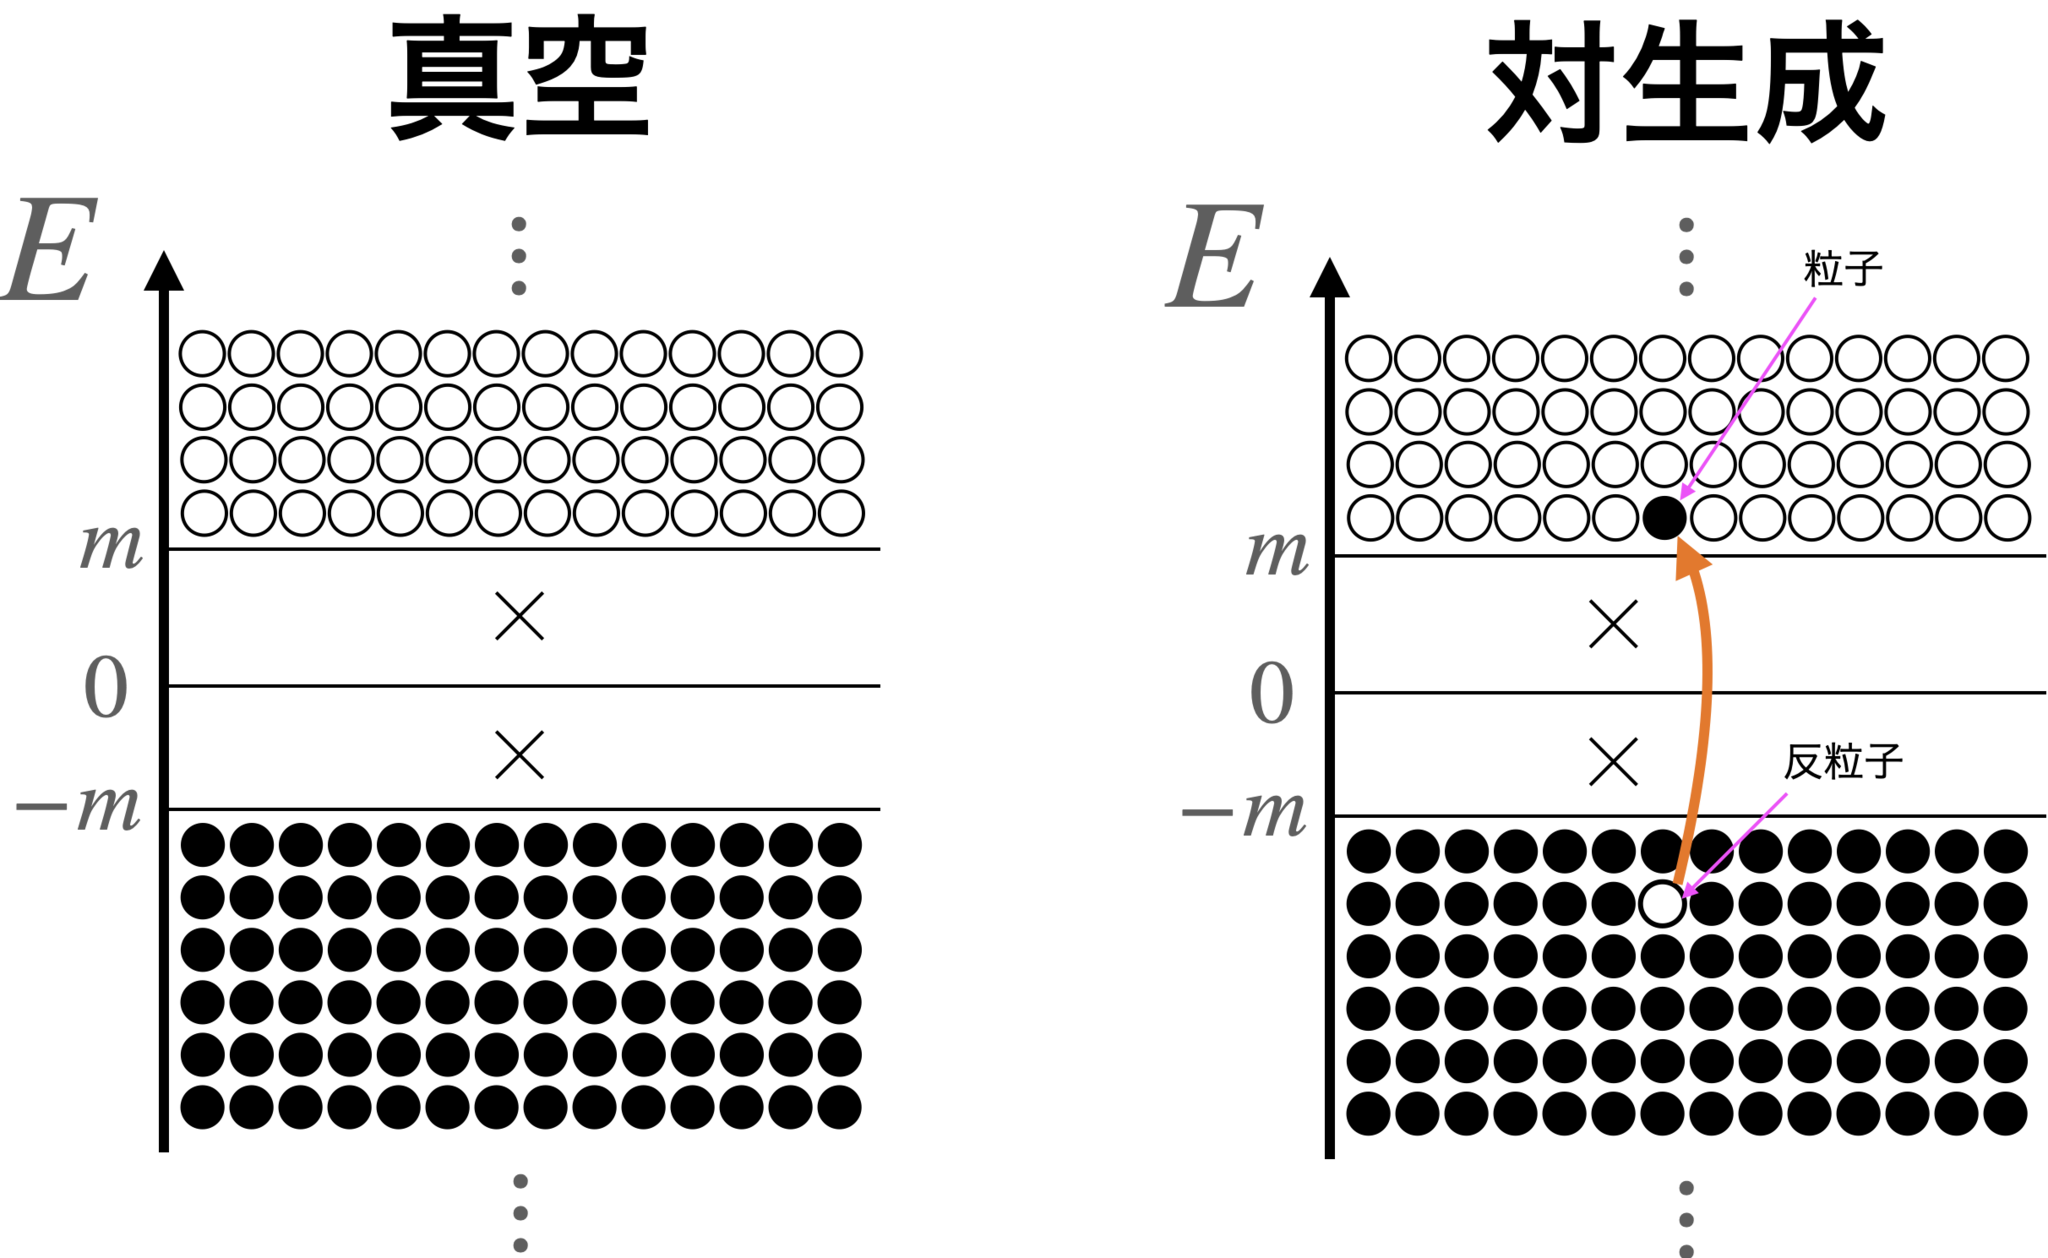 Diracの海における粒子描像。●は占有されている状態、○は空いている状態。×は禁制帯。
【左図】 E<0の状態は全て埋まっていて、E>0の状態は全て空いている真空状態。粒子も反粒子も存在しない。
【右図】 E<0におけるある占有状態がE>0に励起した図。E<0に穴が空いた状態が存在し、E>0に占有された状態が存在すると、それらはそれぞれ反粒子と粒子として観測される